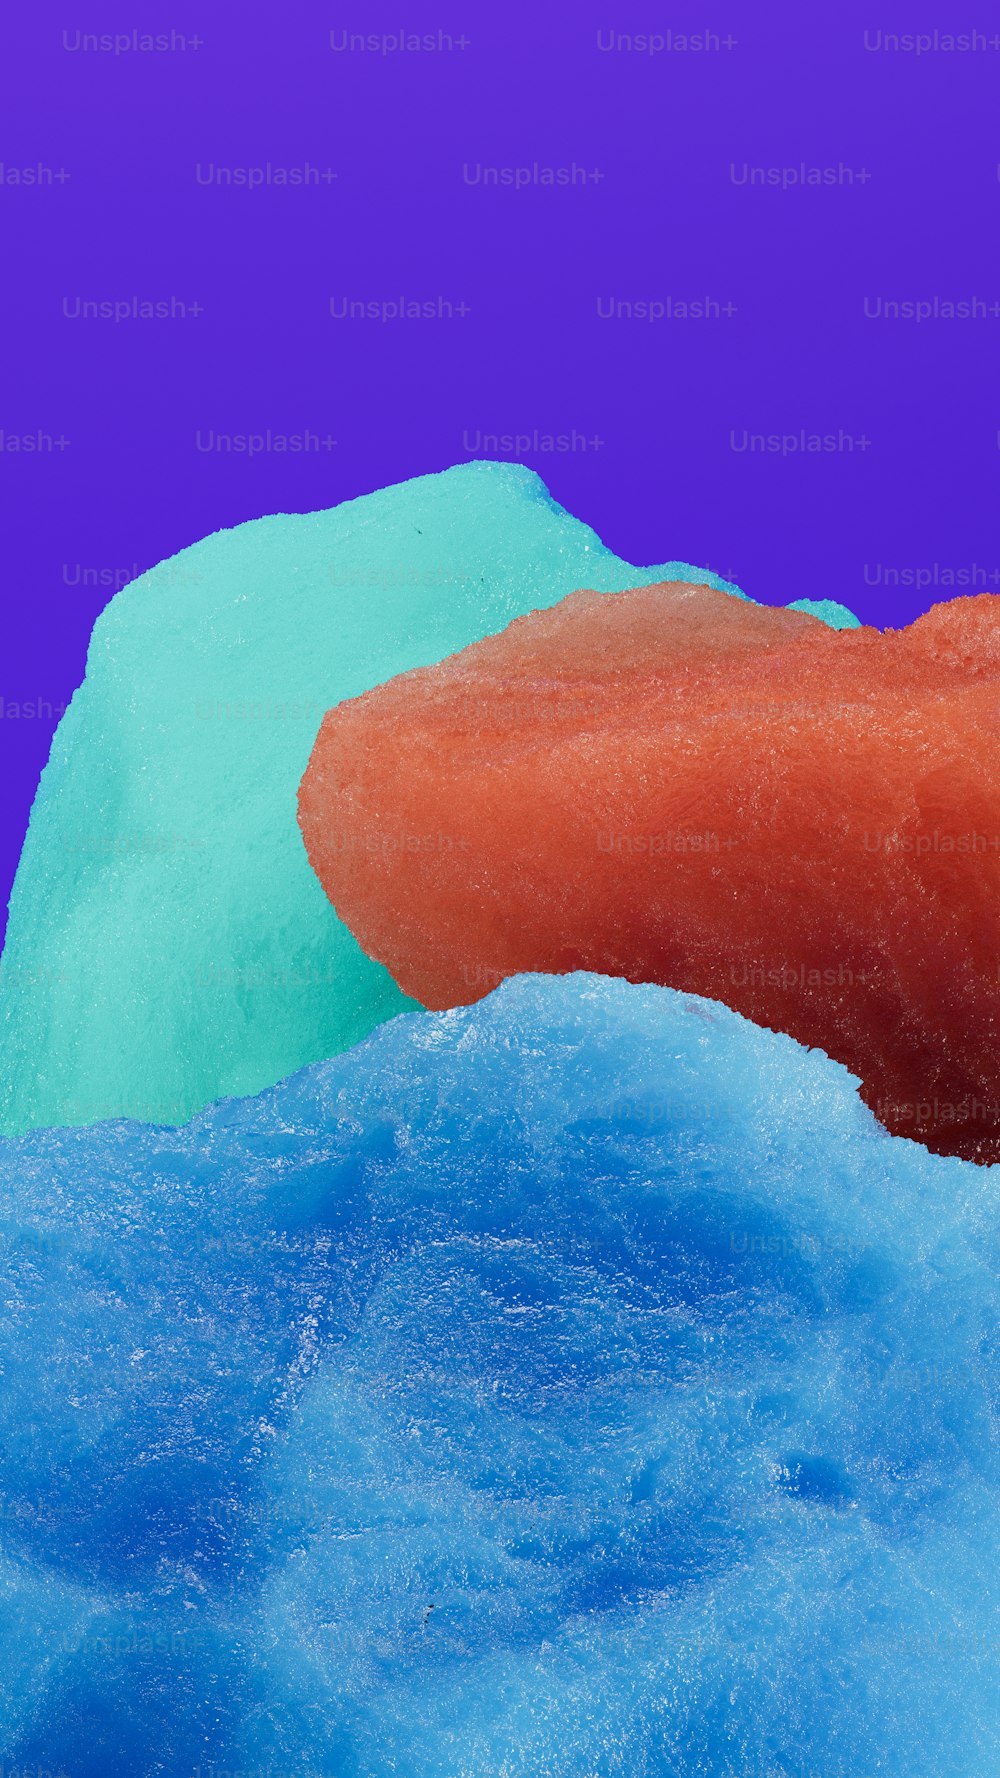 um close up de um donut em uma superfície azul